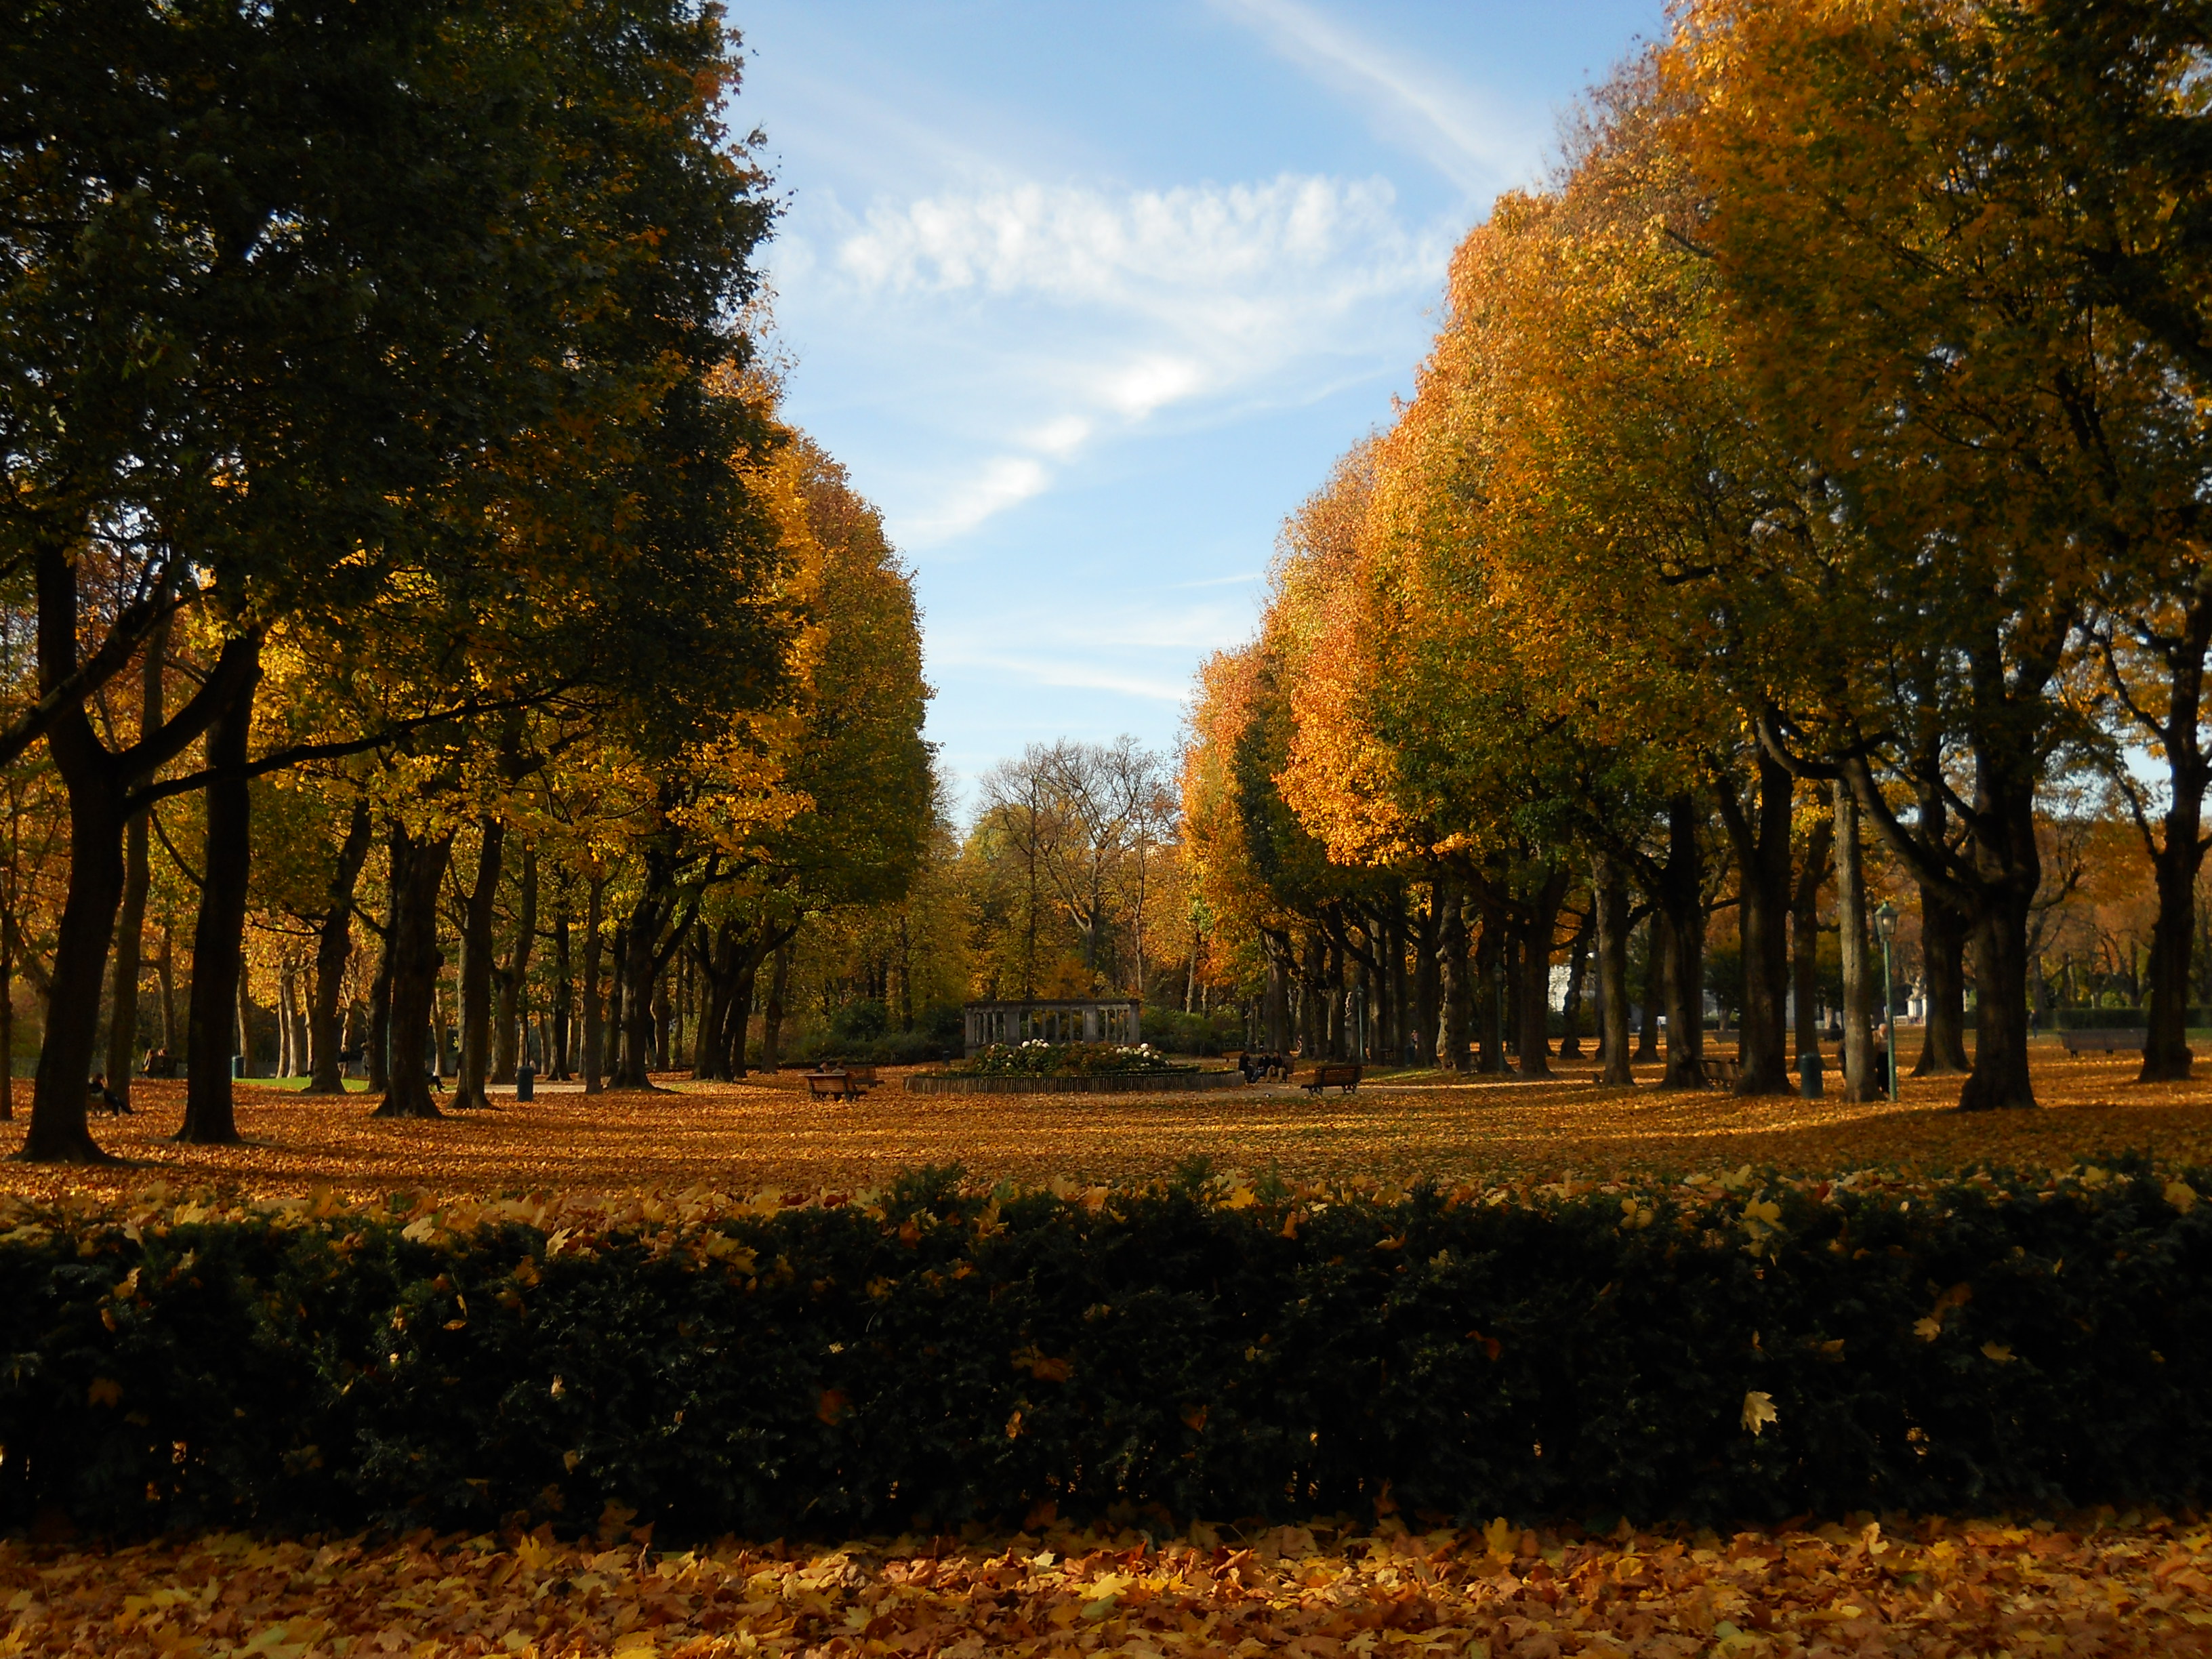 Brussels - a perfect autumn break